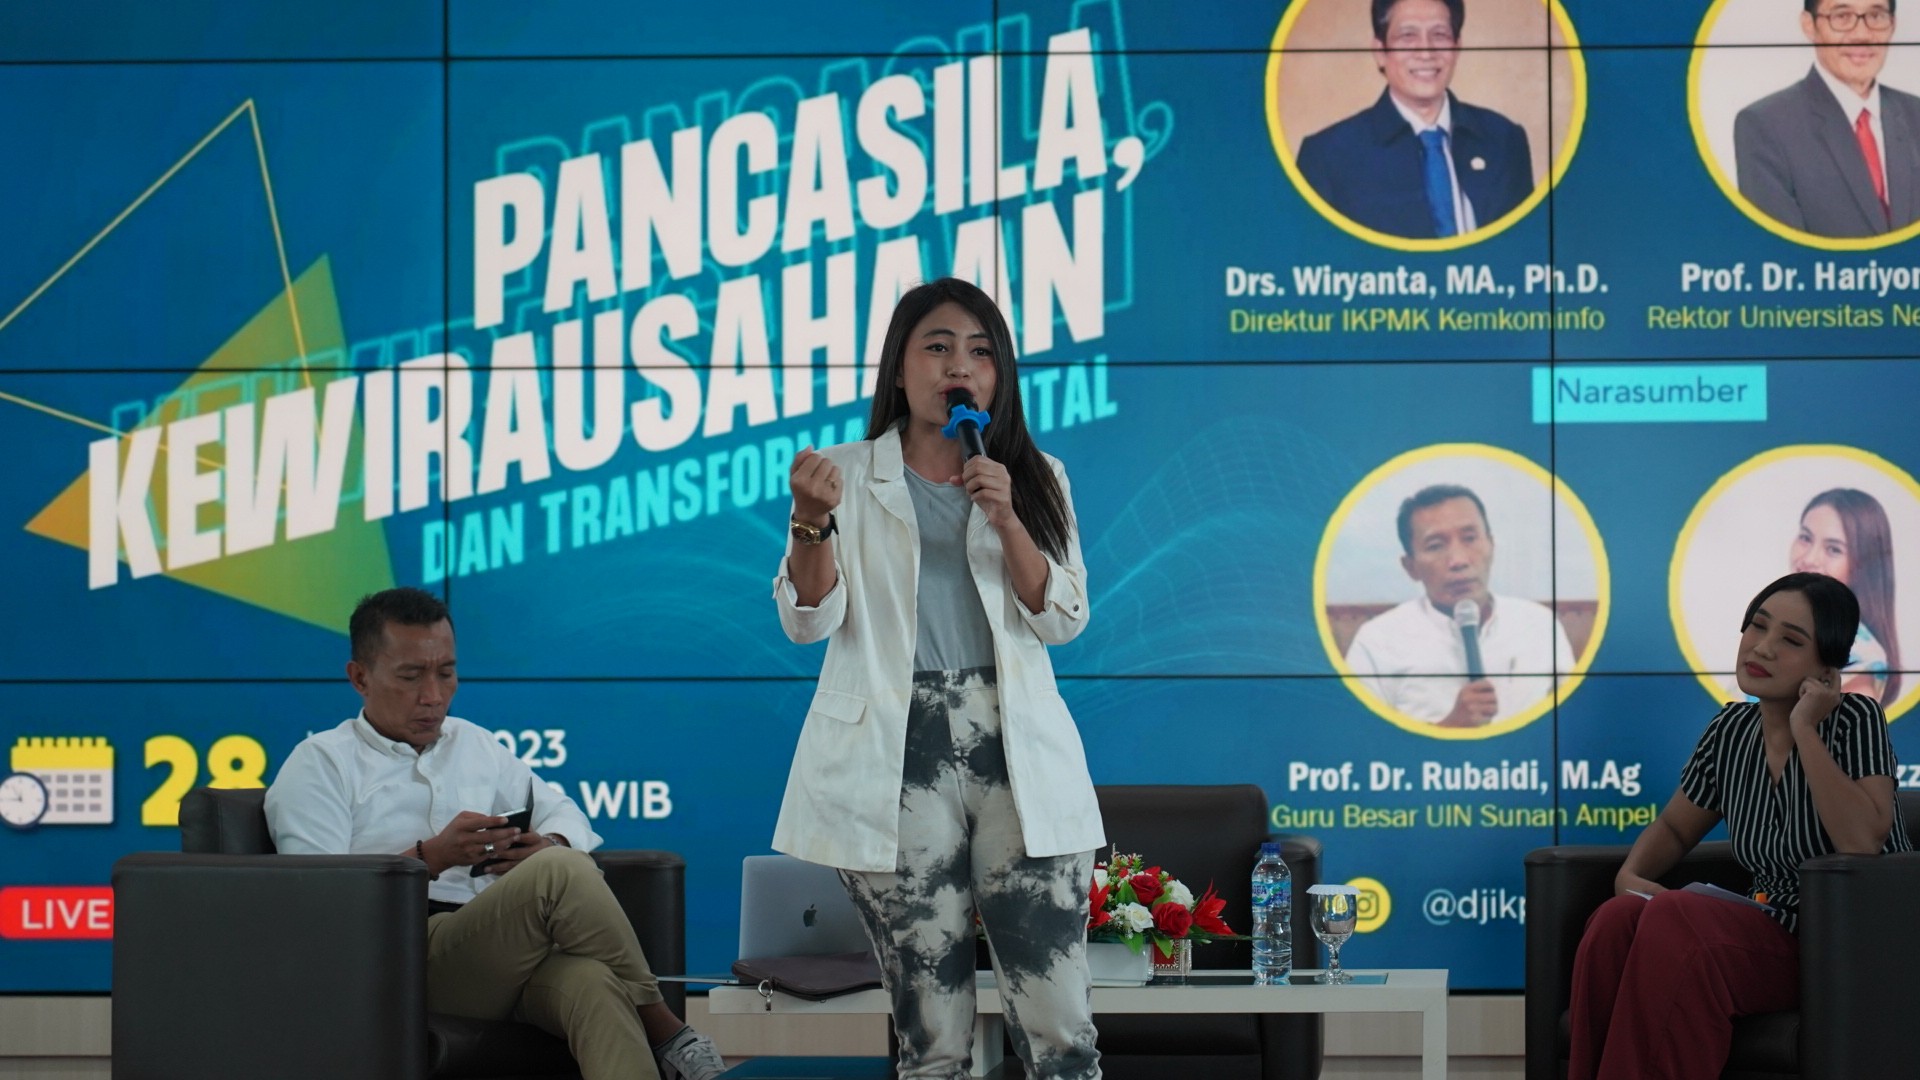 Photo of UM dan Kominfo Gelar Angkat Isu “Pancasila, Kewirausahaan dan Transformasi Digital” dalam Seminar Pancasila